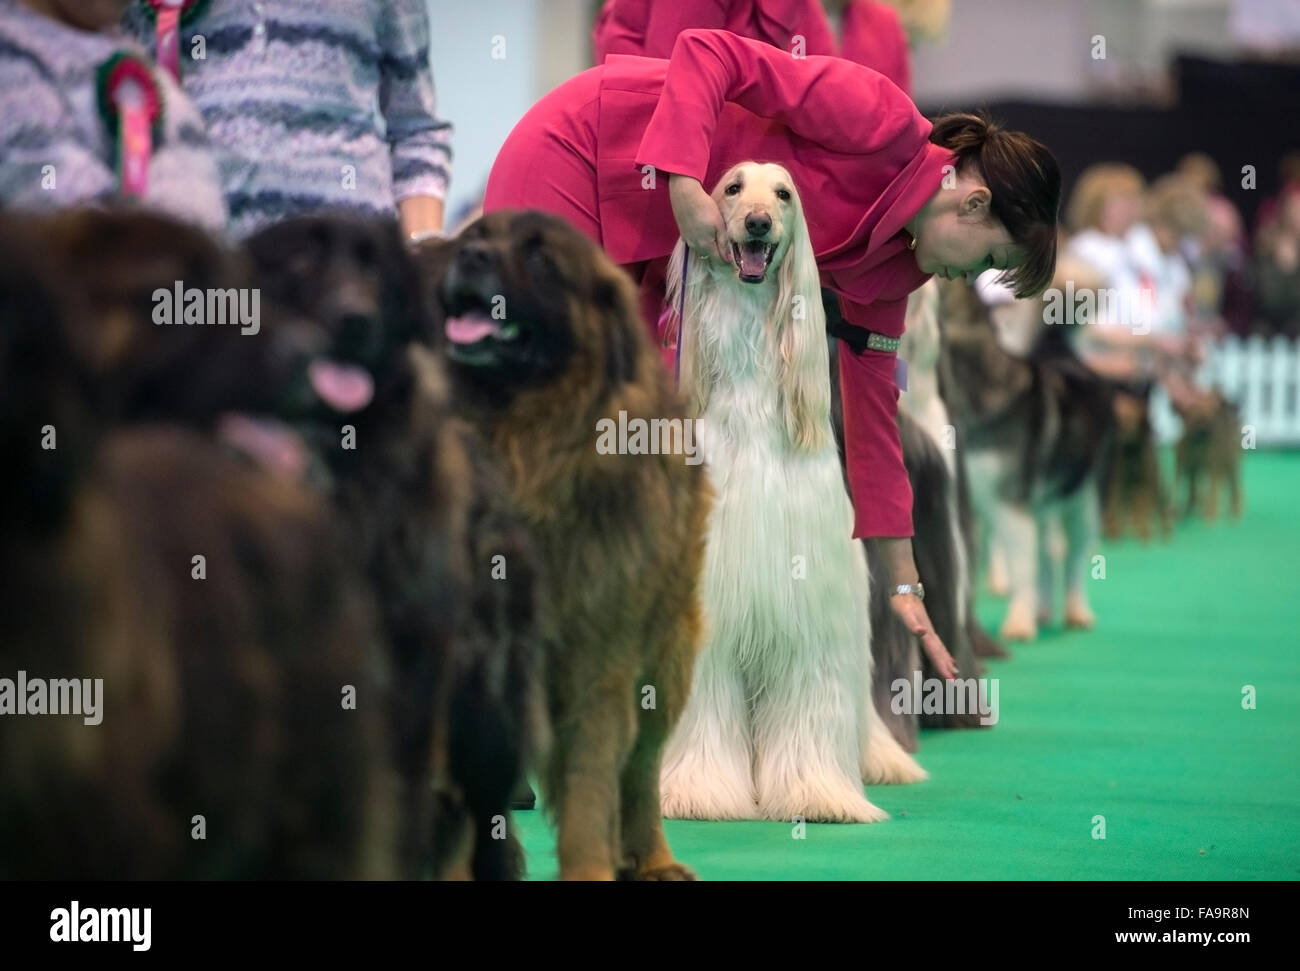 Crufts Dog Show im NEC, Birmingham - ein Afghanischer Windhund mit den Kosenamen "Marcus" zeigt im Abschnitt Breeders Cup Deutschland 2015 Stockfoto